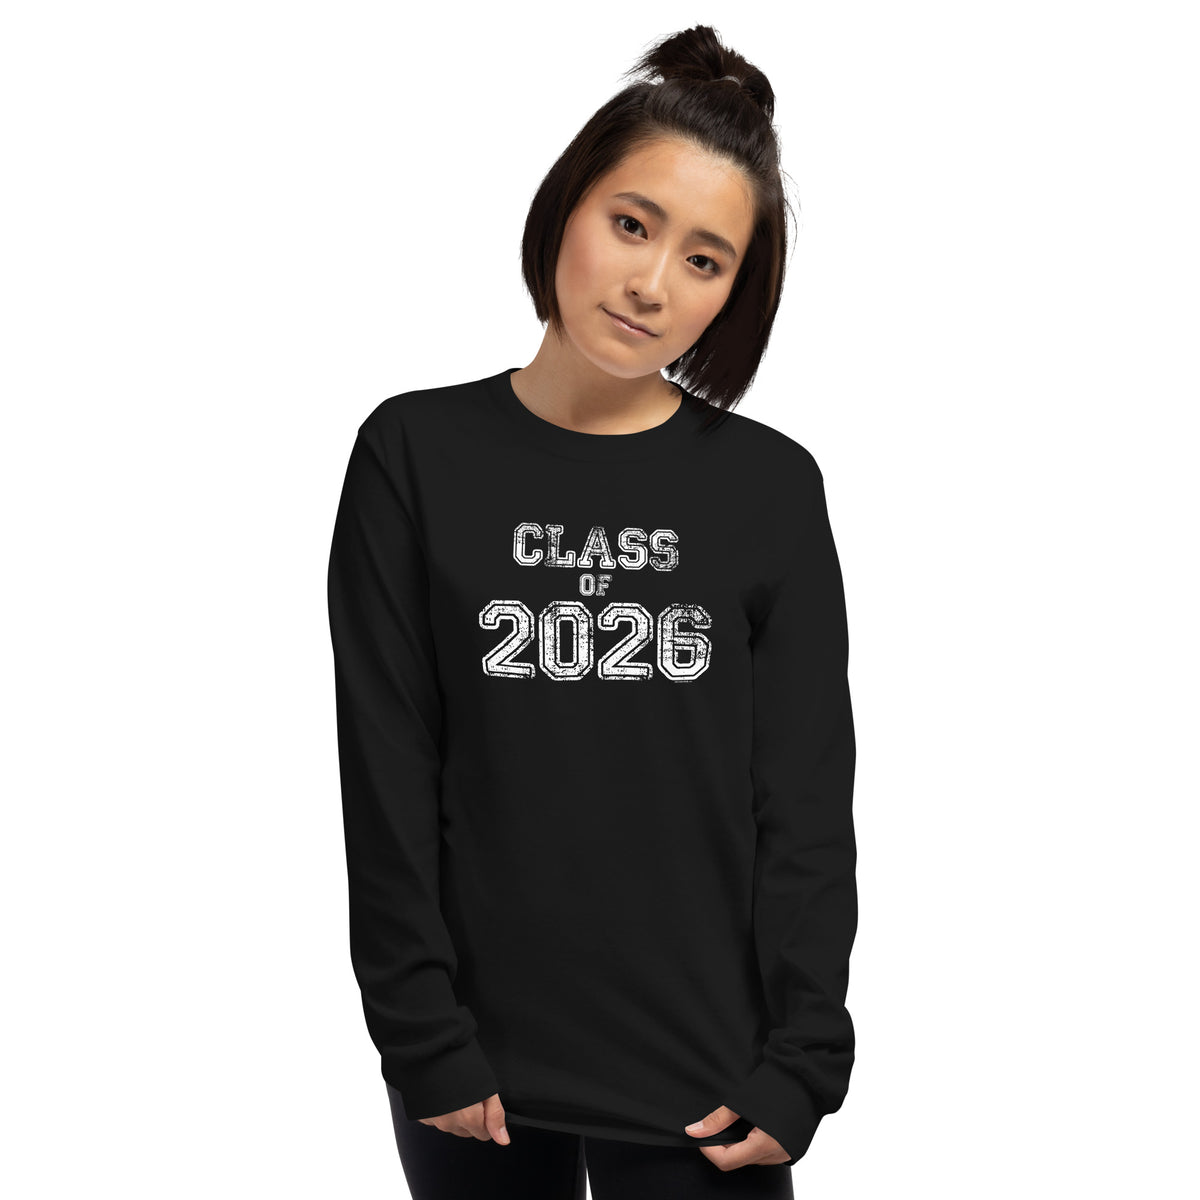 Class of 2026 Long Sleeve T-Shirt - Original